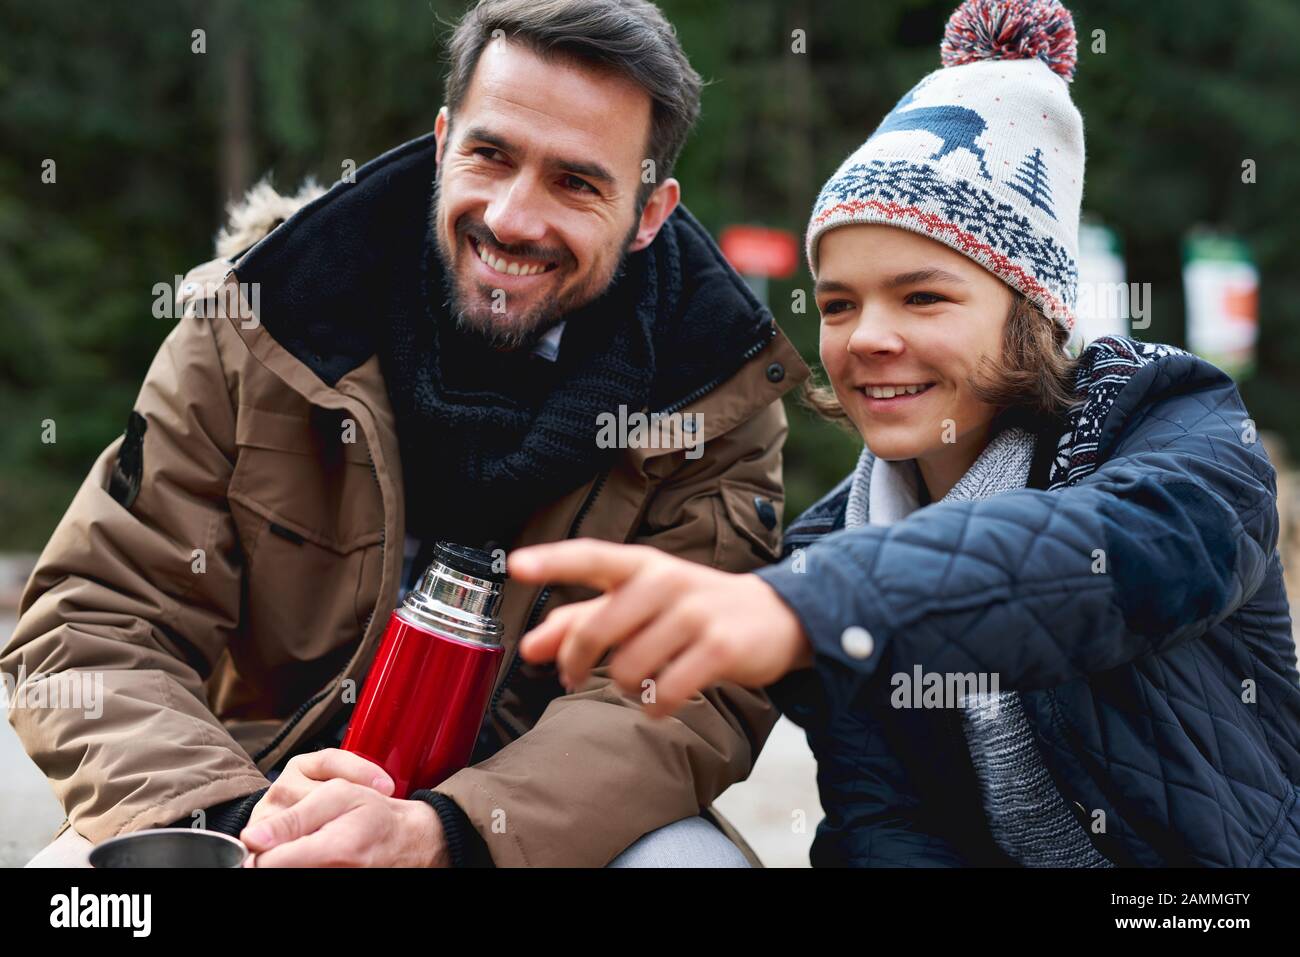 Le père souriant et son fils passent ensemble à l'extérieur Banque D'Images